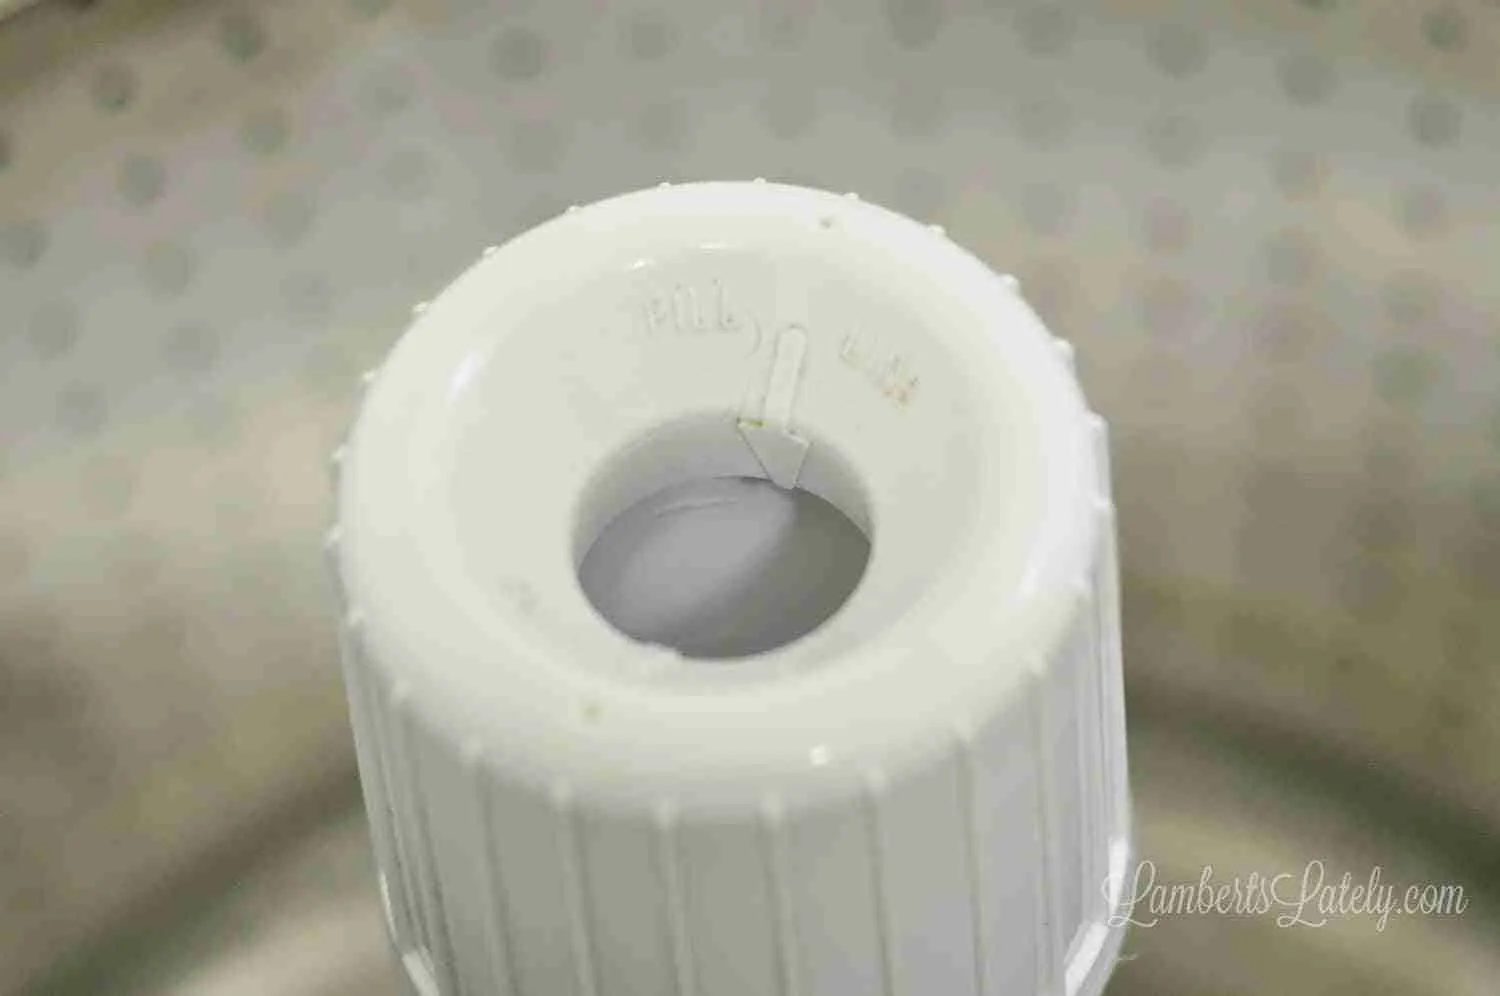 fabric softener dispenser on washing machine